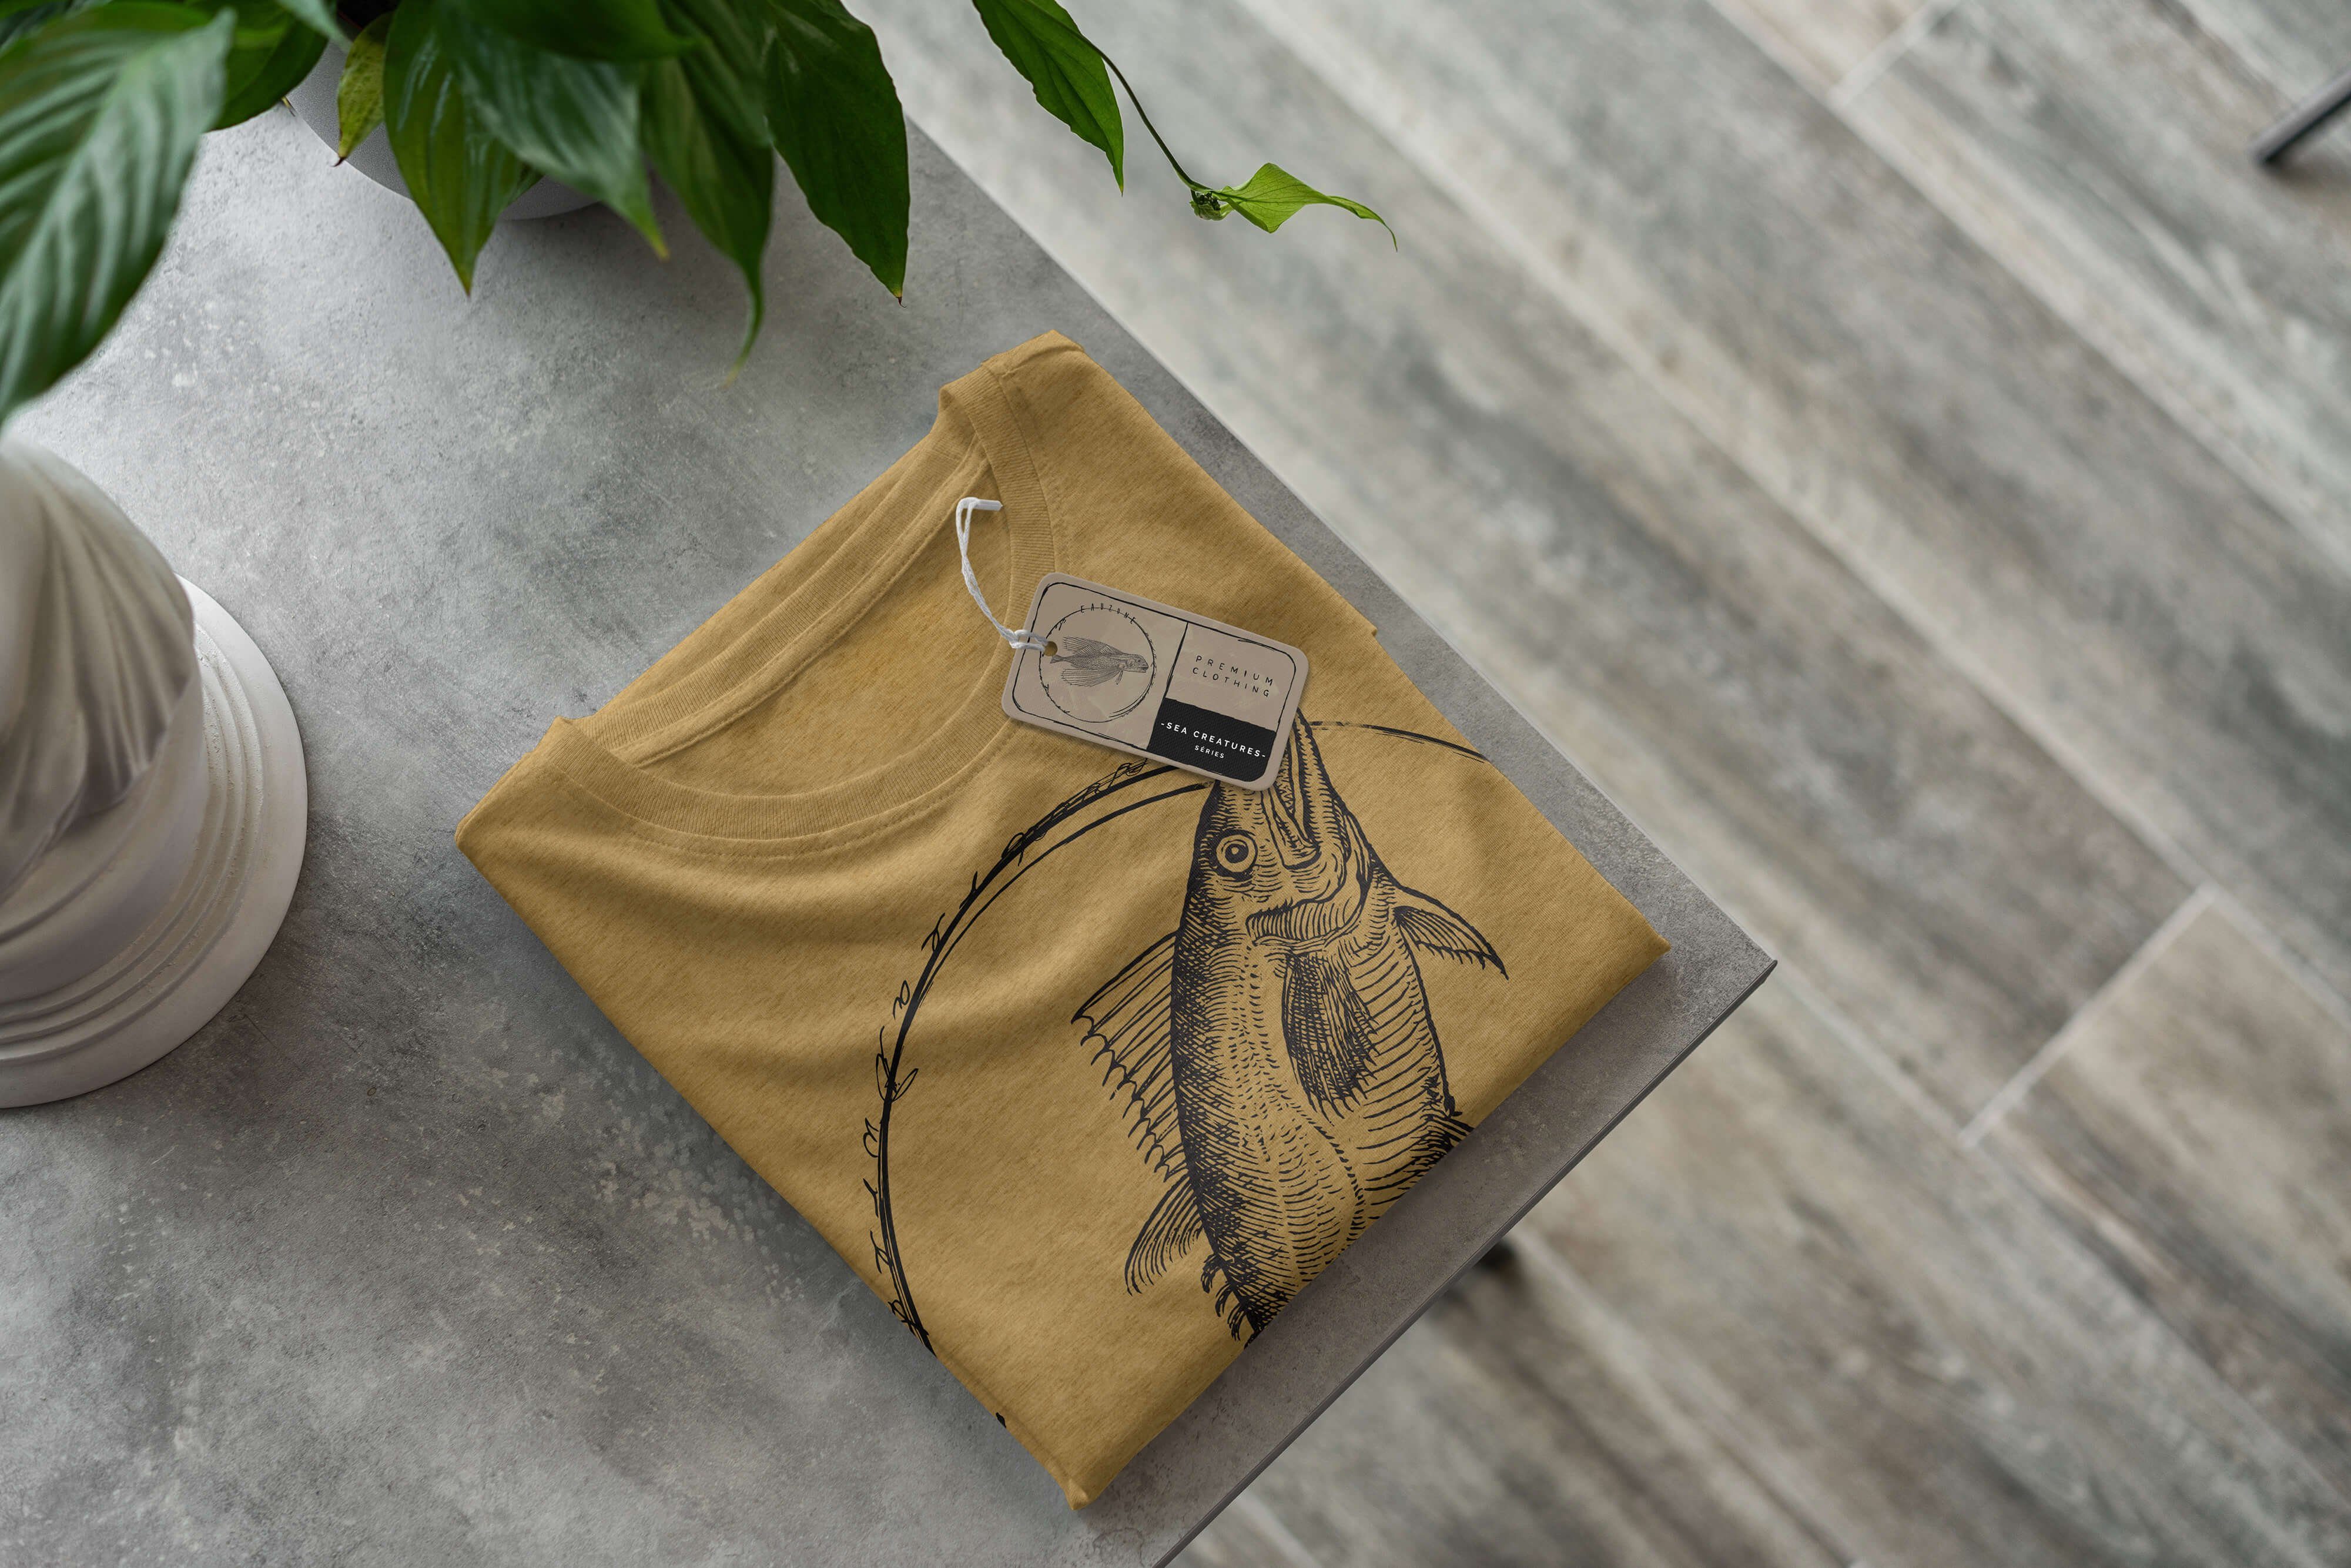 sportlicher feine Fische 098 und T-Shirt Art Sea - Gold Struktur Schnitt Creatures, T-Shirt Sinus Sea Antique / Serie: Tiefsee